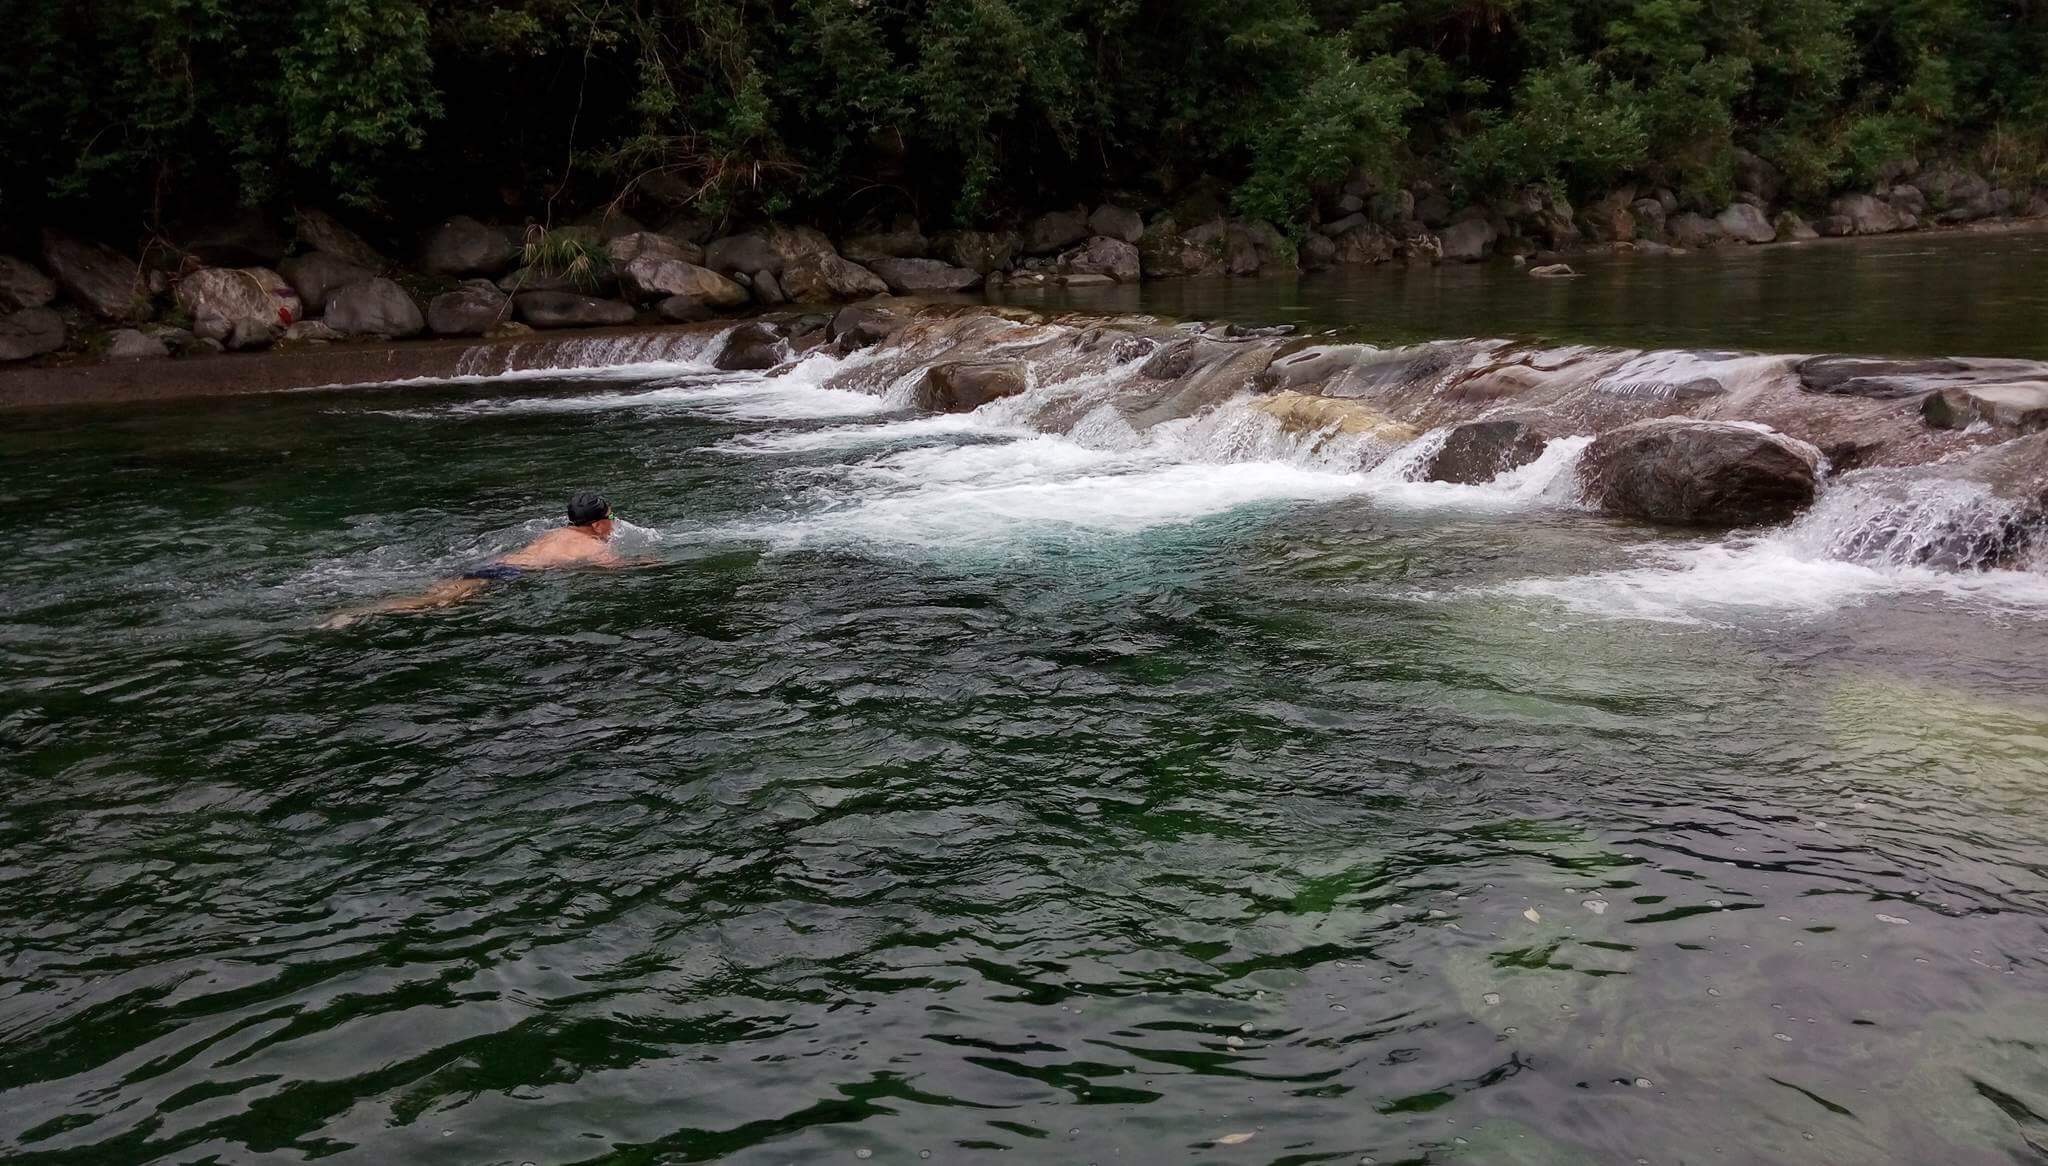 晨泳達人深入分享每日晨泳帶來的好處及花蓮市郊幾處適合晨泳的野溪秘境。